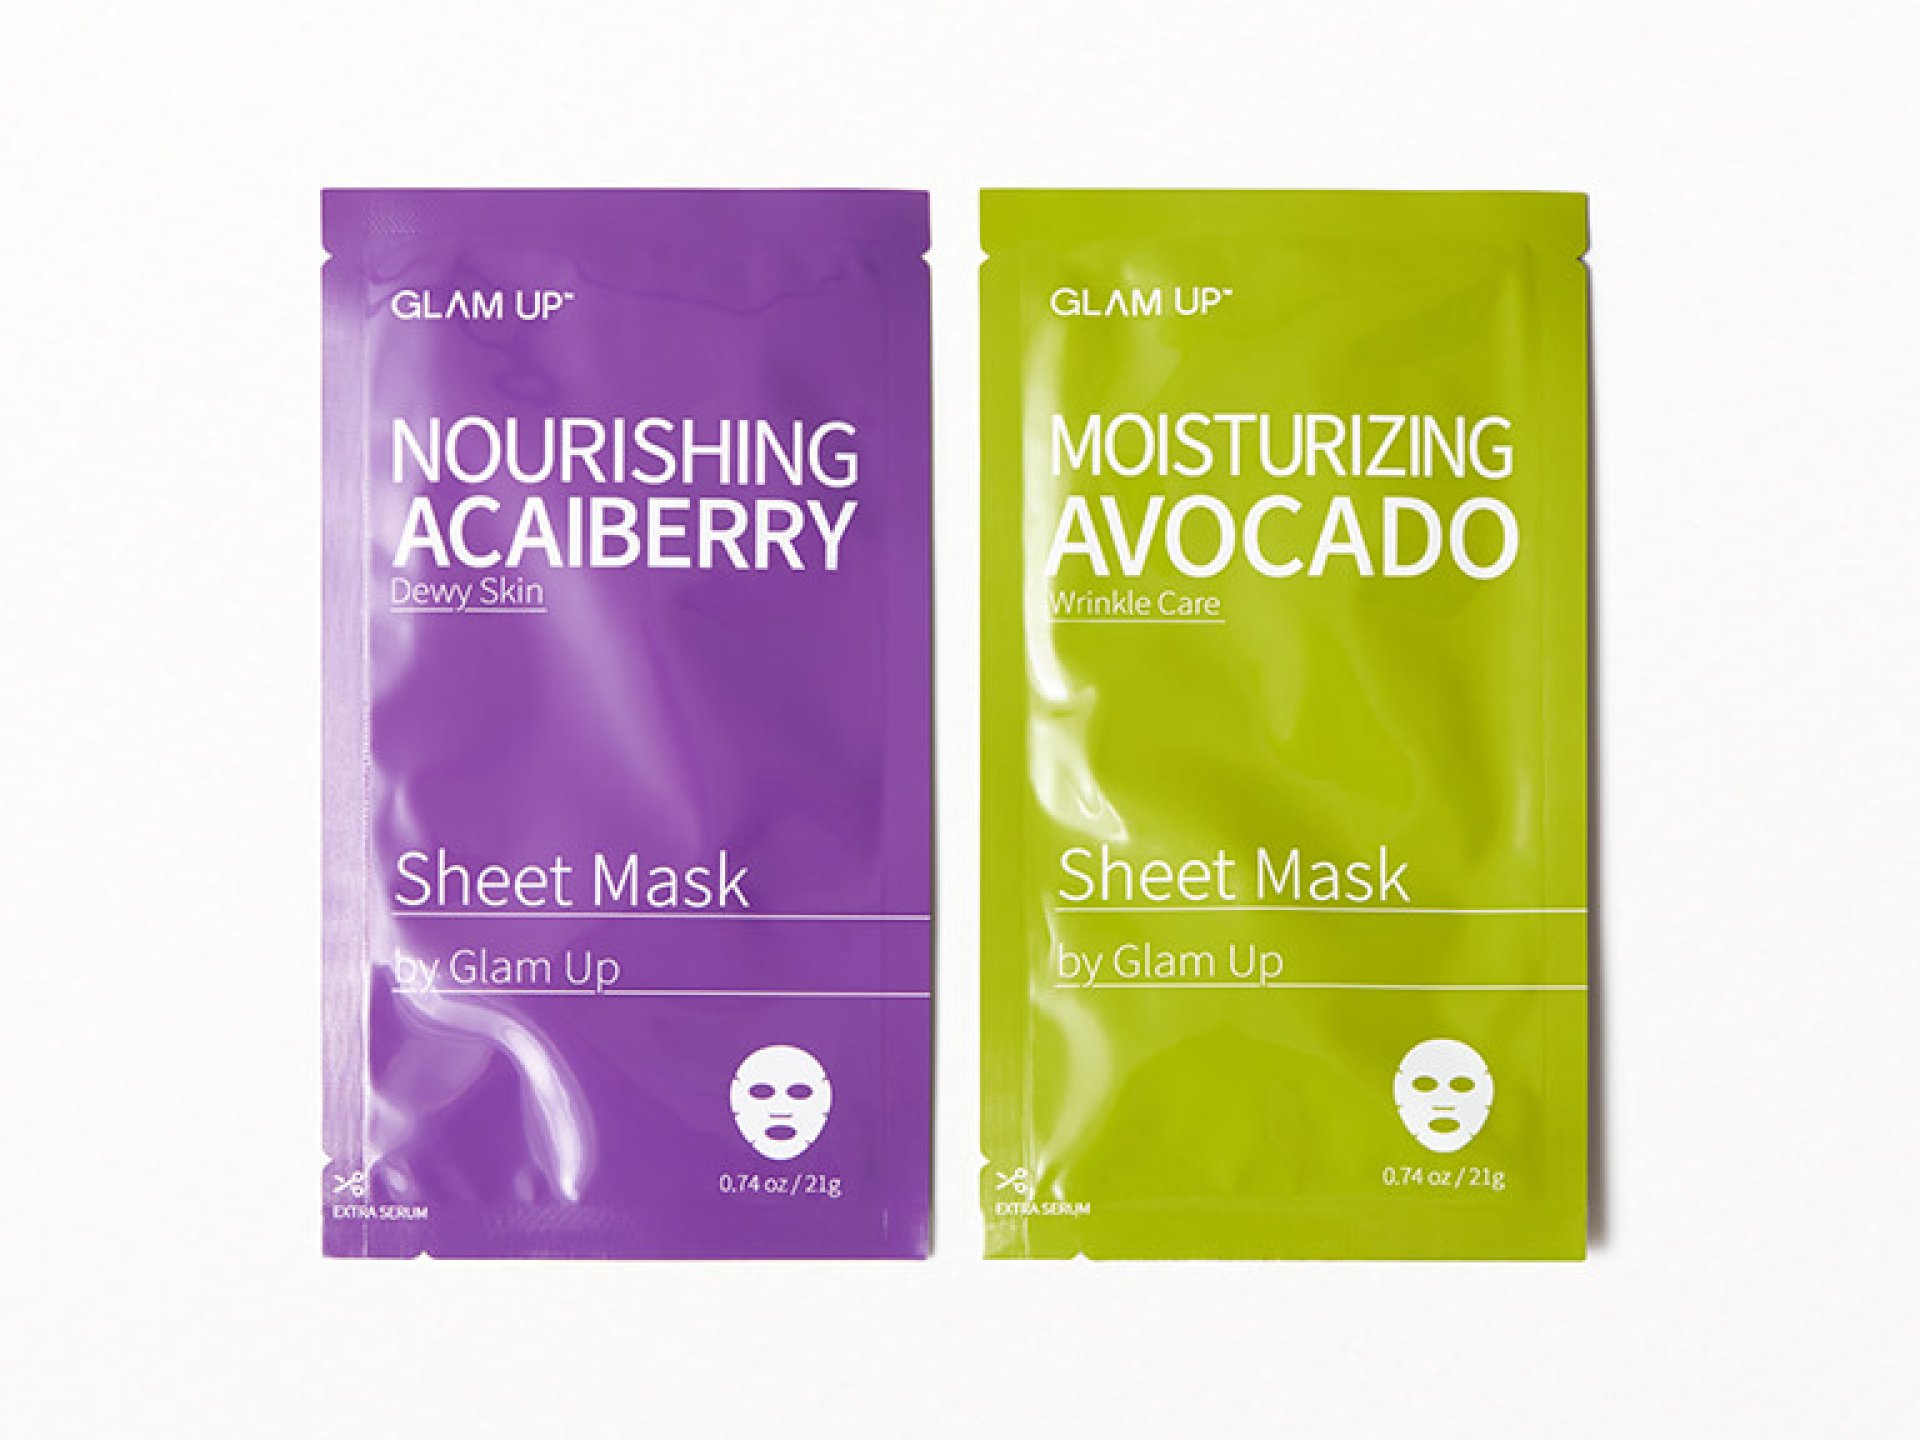 GLAM UP Moisturizing Avocado and Nourishing Acai Berry Sheet Mask Set